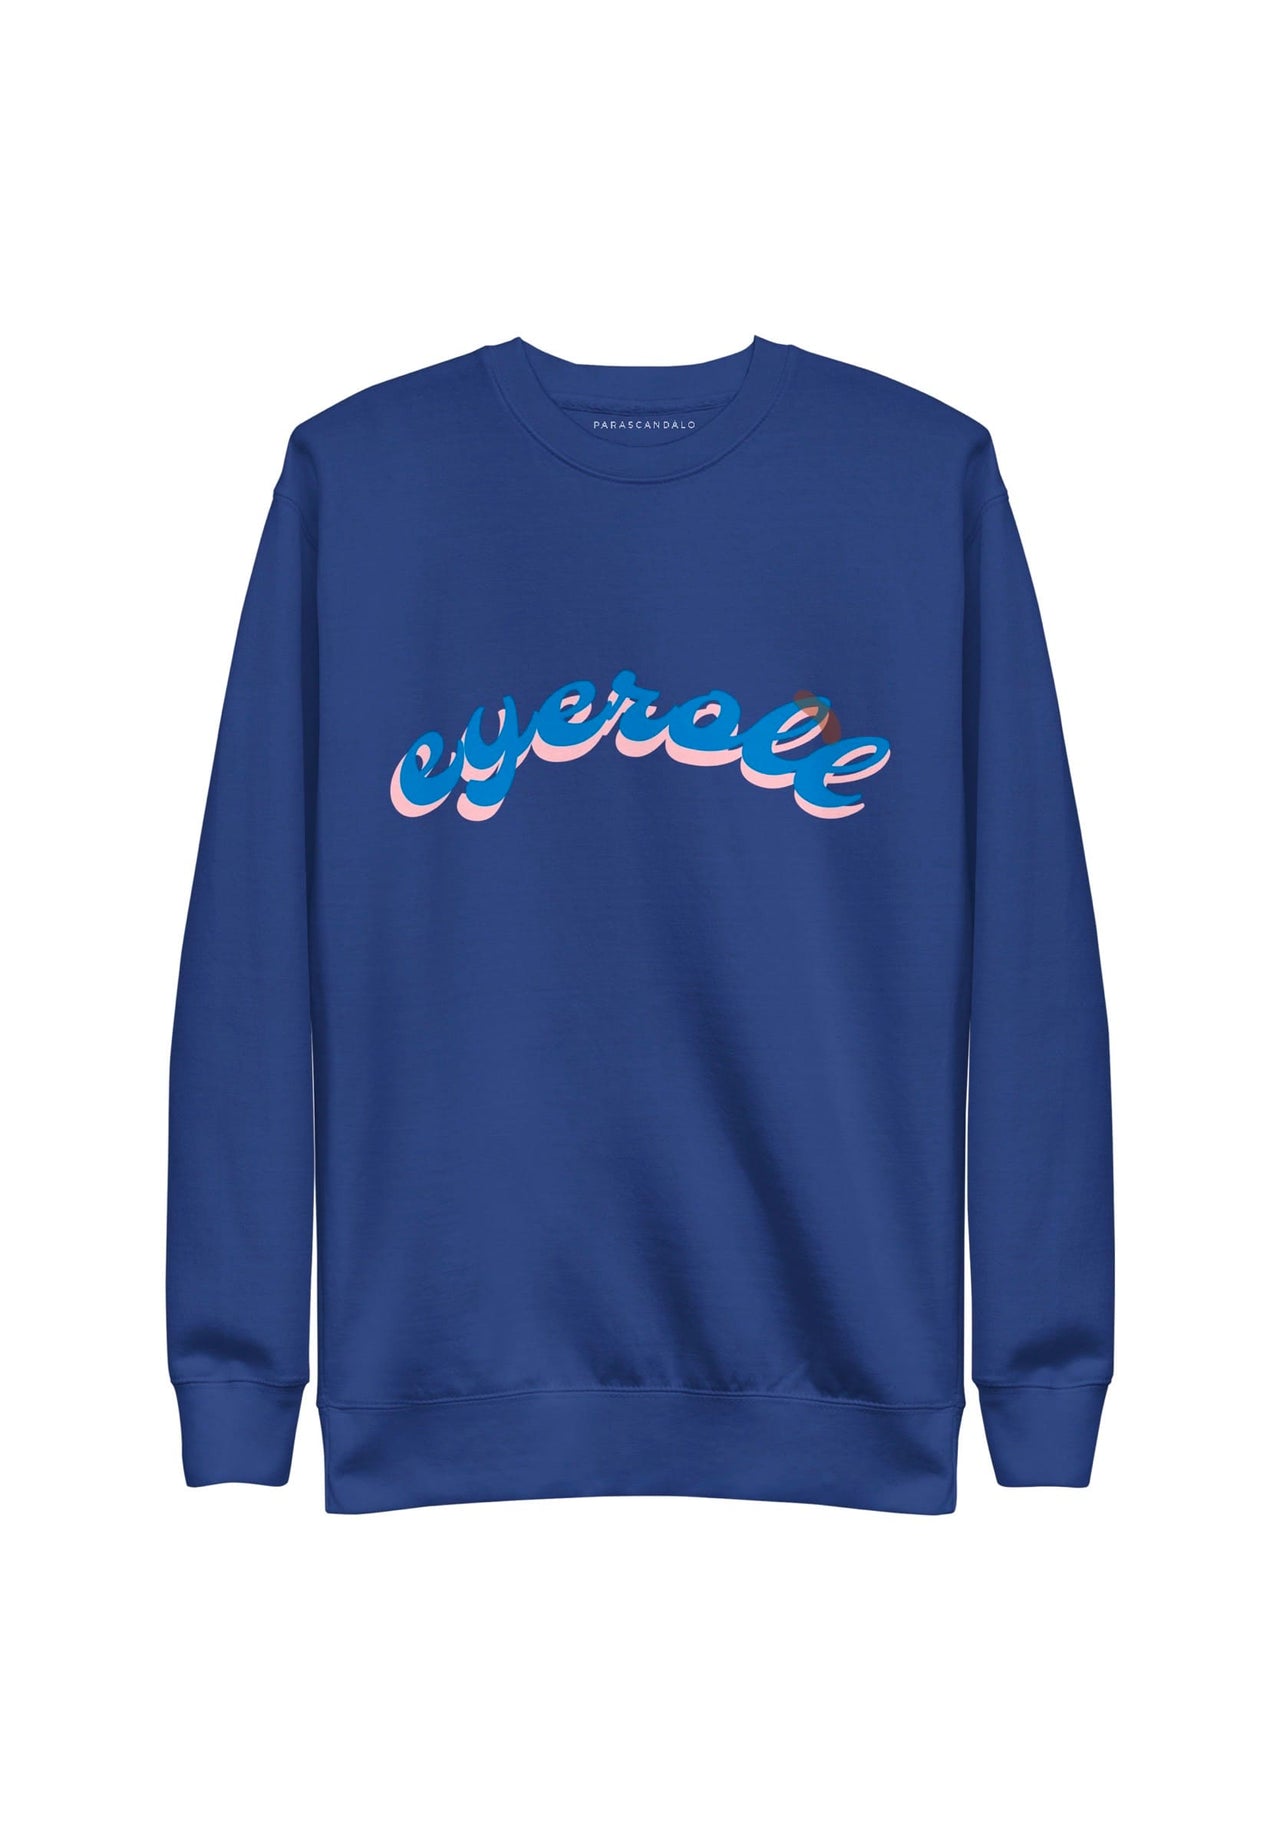 EYEROLL Sweatshirt